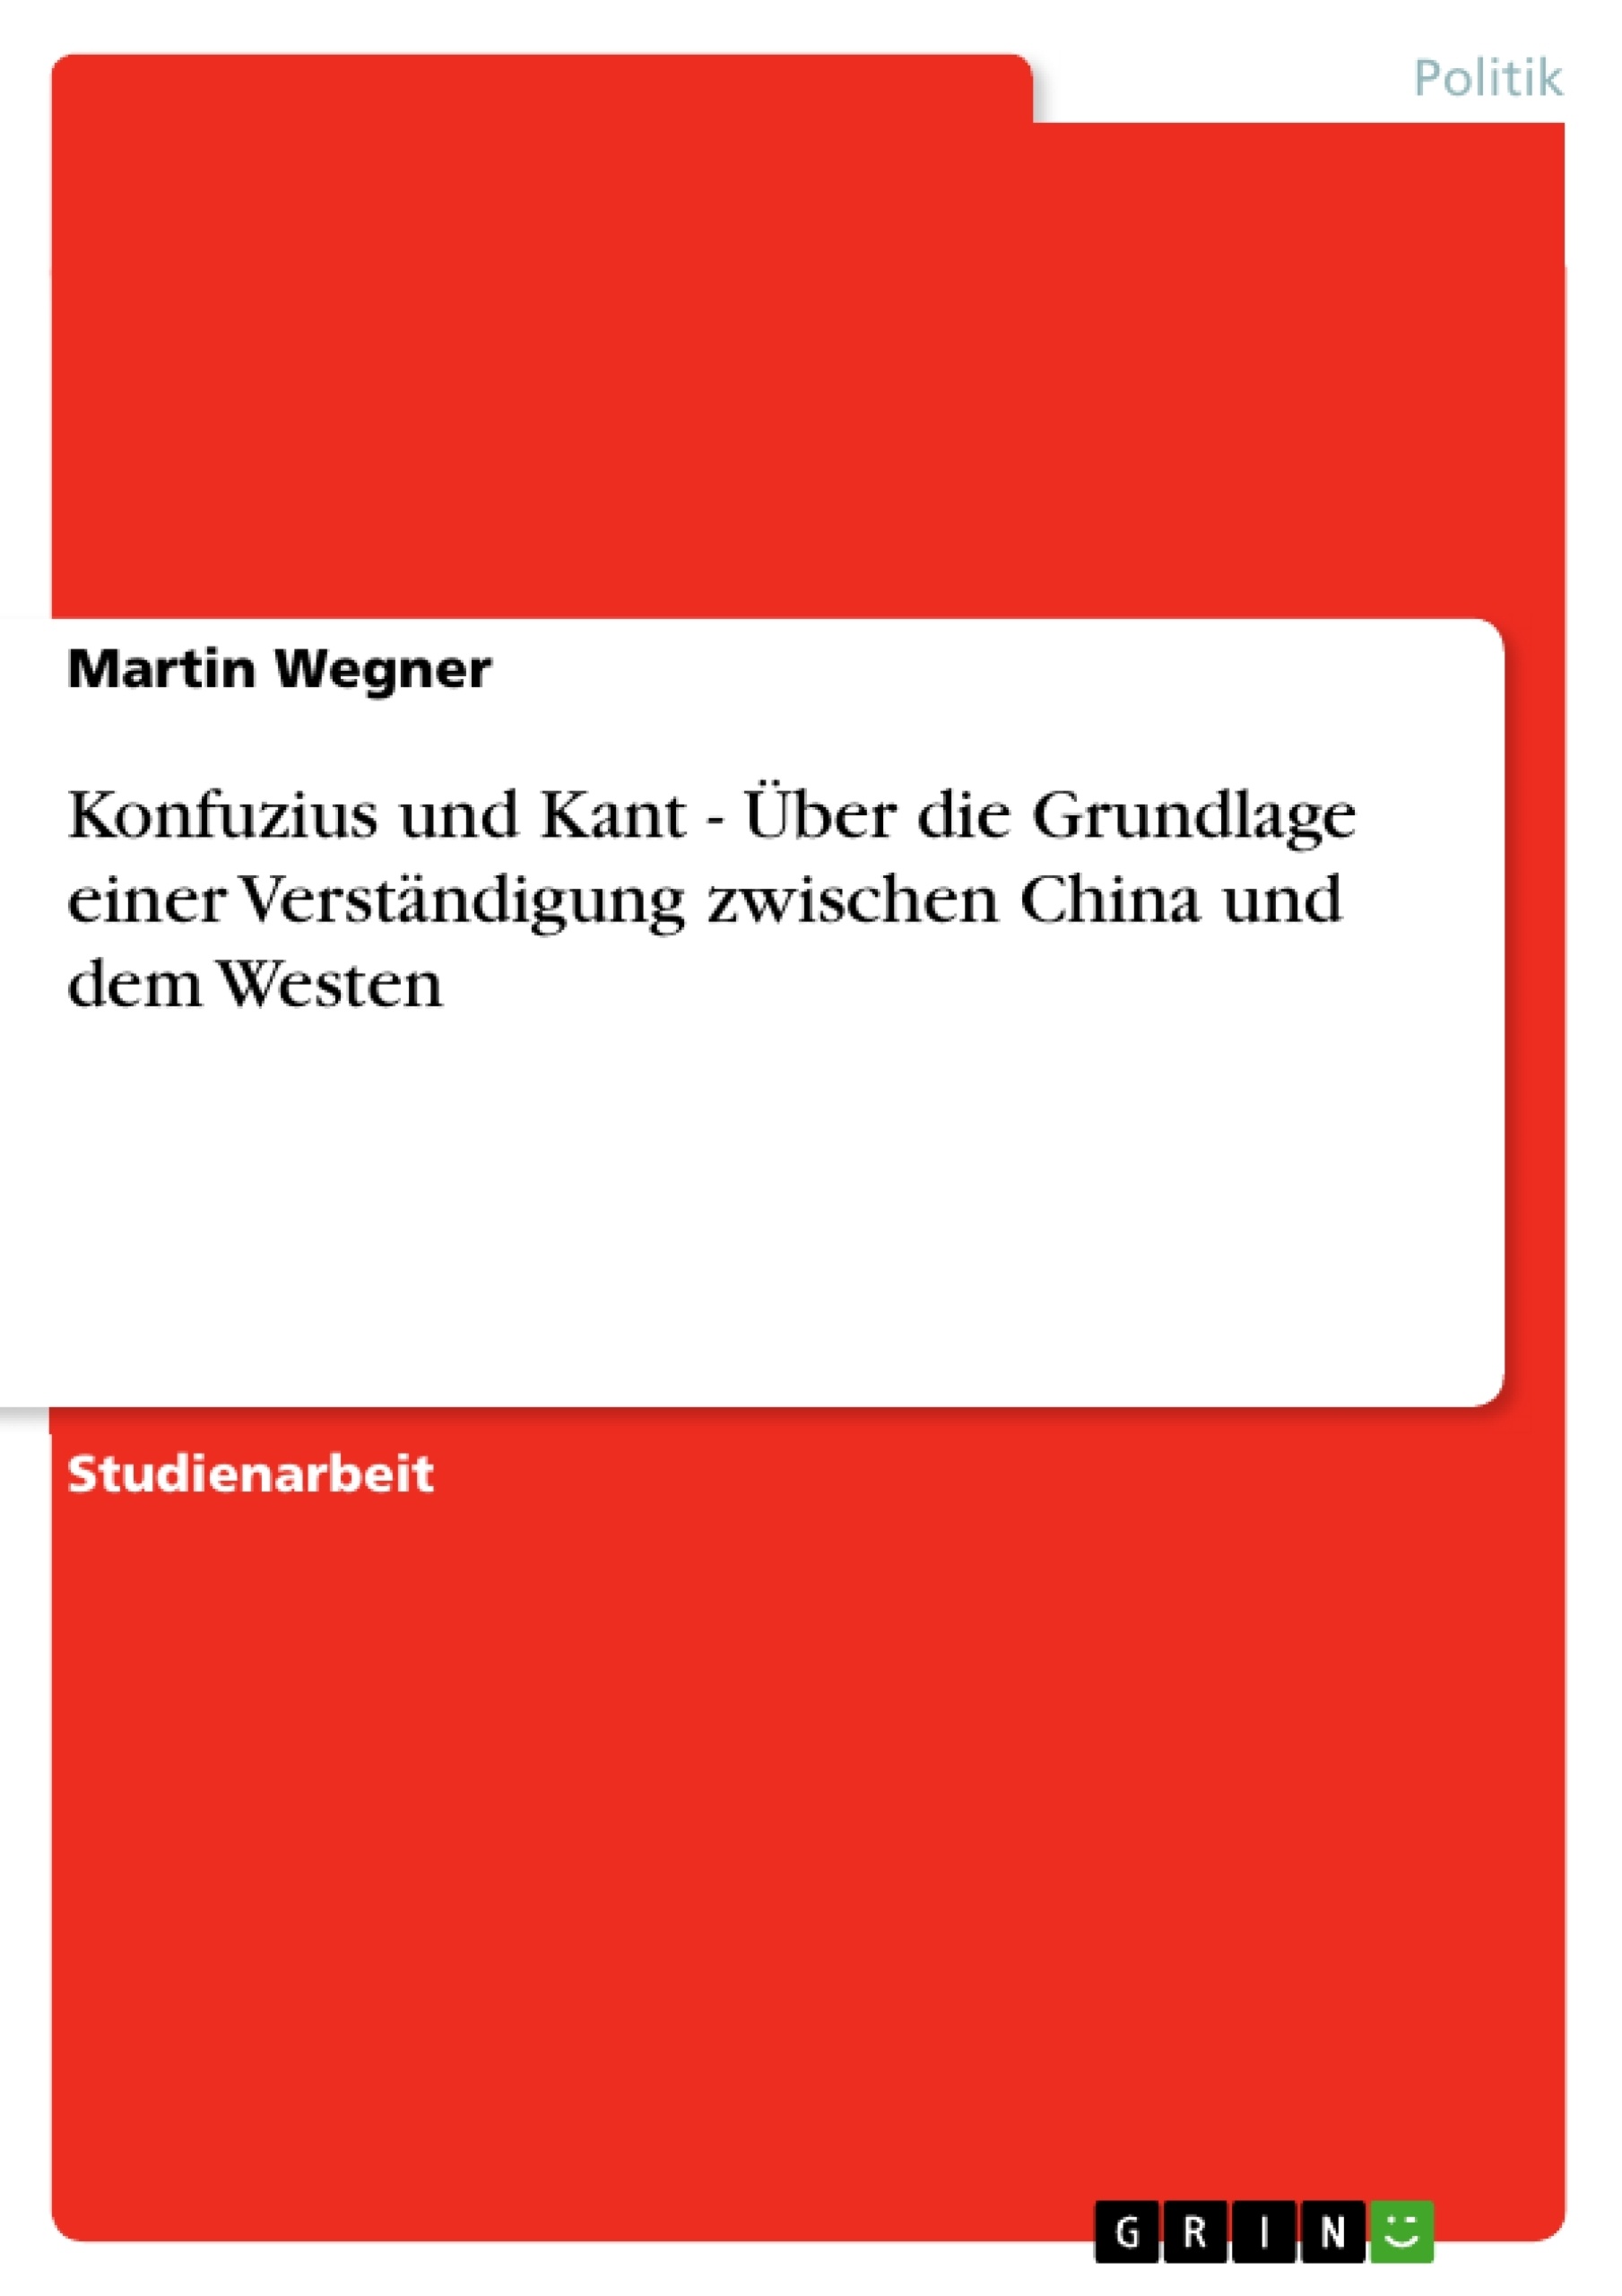 Title: Konfuzius und Kant - Über die Grundlage einer Verständigung zwischen China und dem Westen